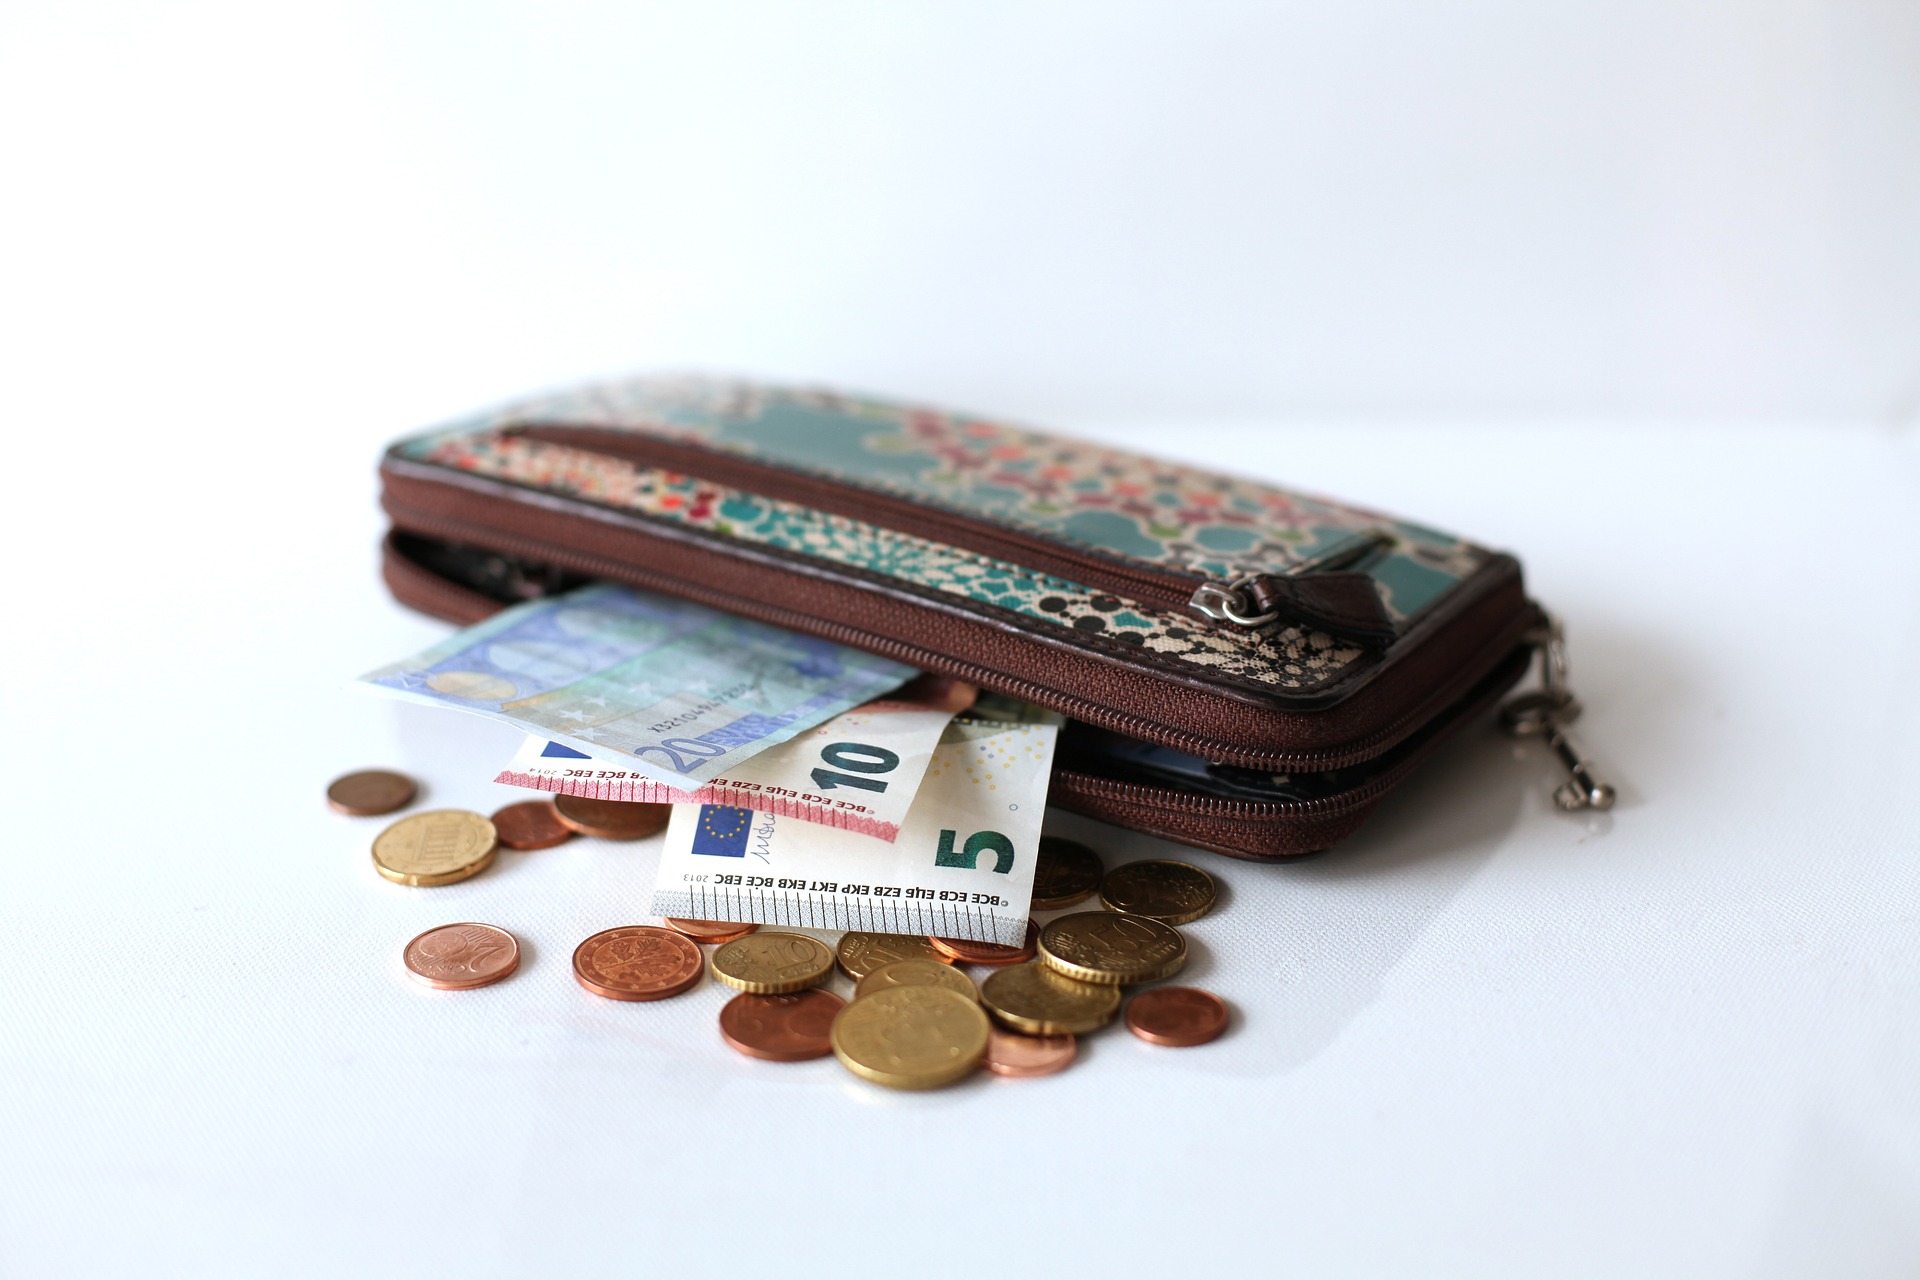 Zu sehen ist ein Portemonnaie mit einigen Euro-Scheinen und Münzen darin und daneben.